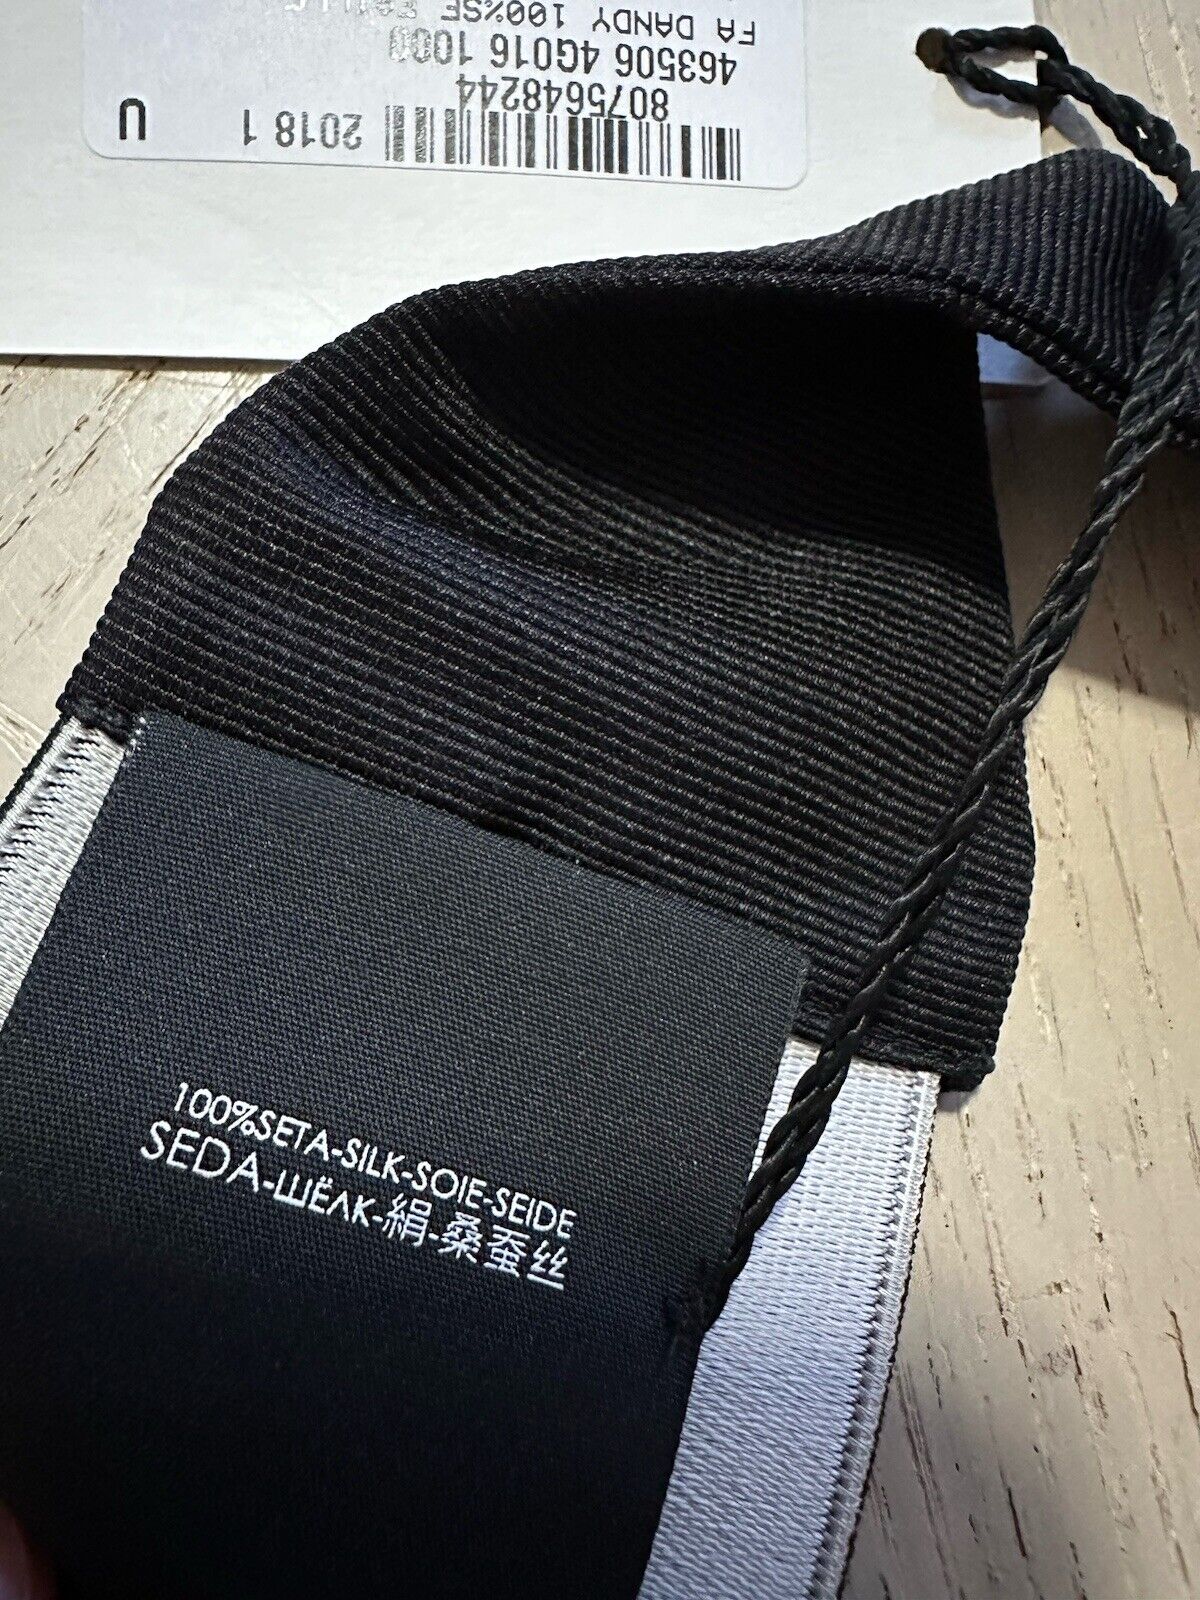 Gucci Mens Silk Cummerbund Black Size L/XL New